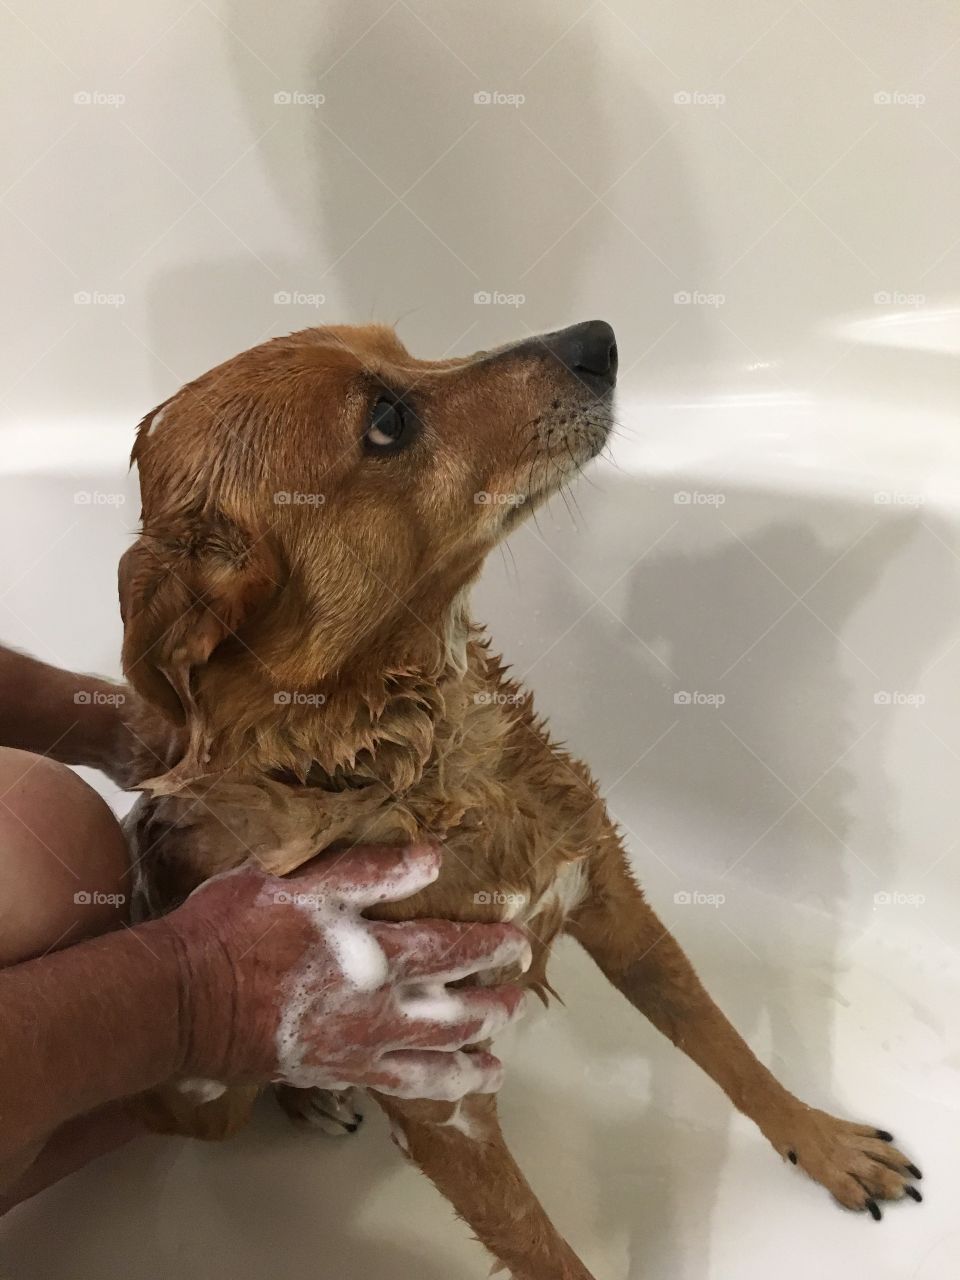 Washing the dog